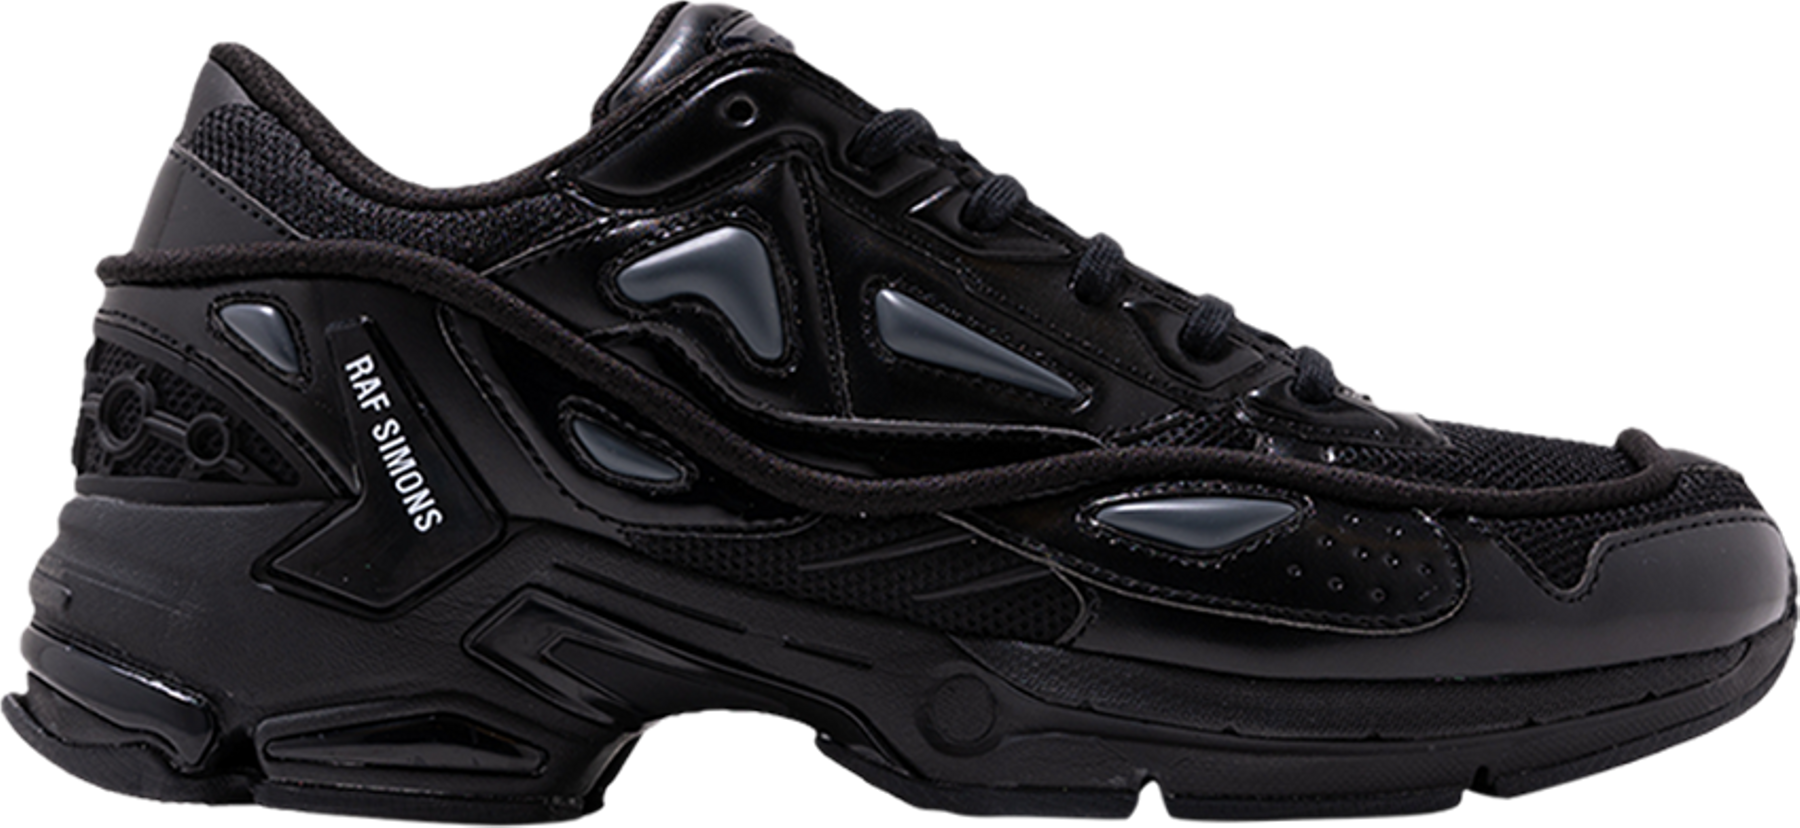 Buy Raf Simons Pharaxus Sneaker 'Black Grey' - HR830001S 0370 | GOAT